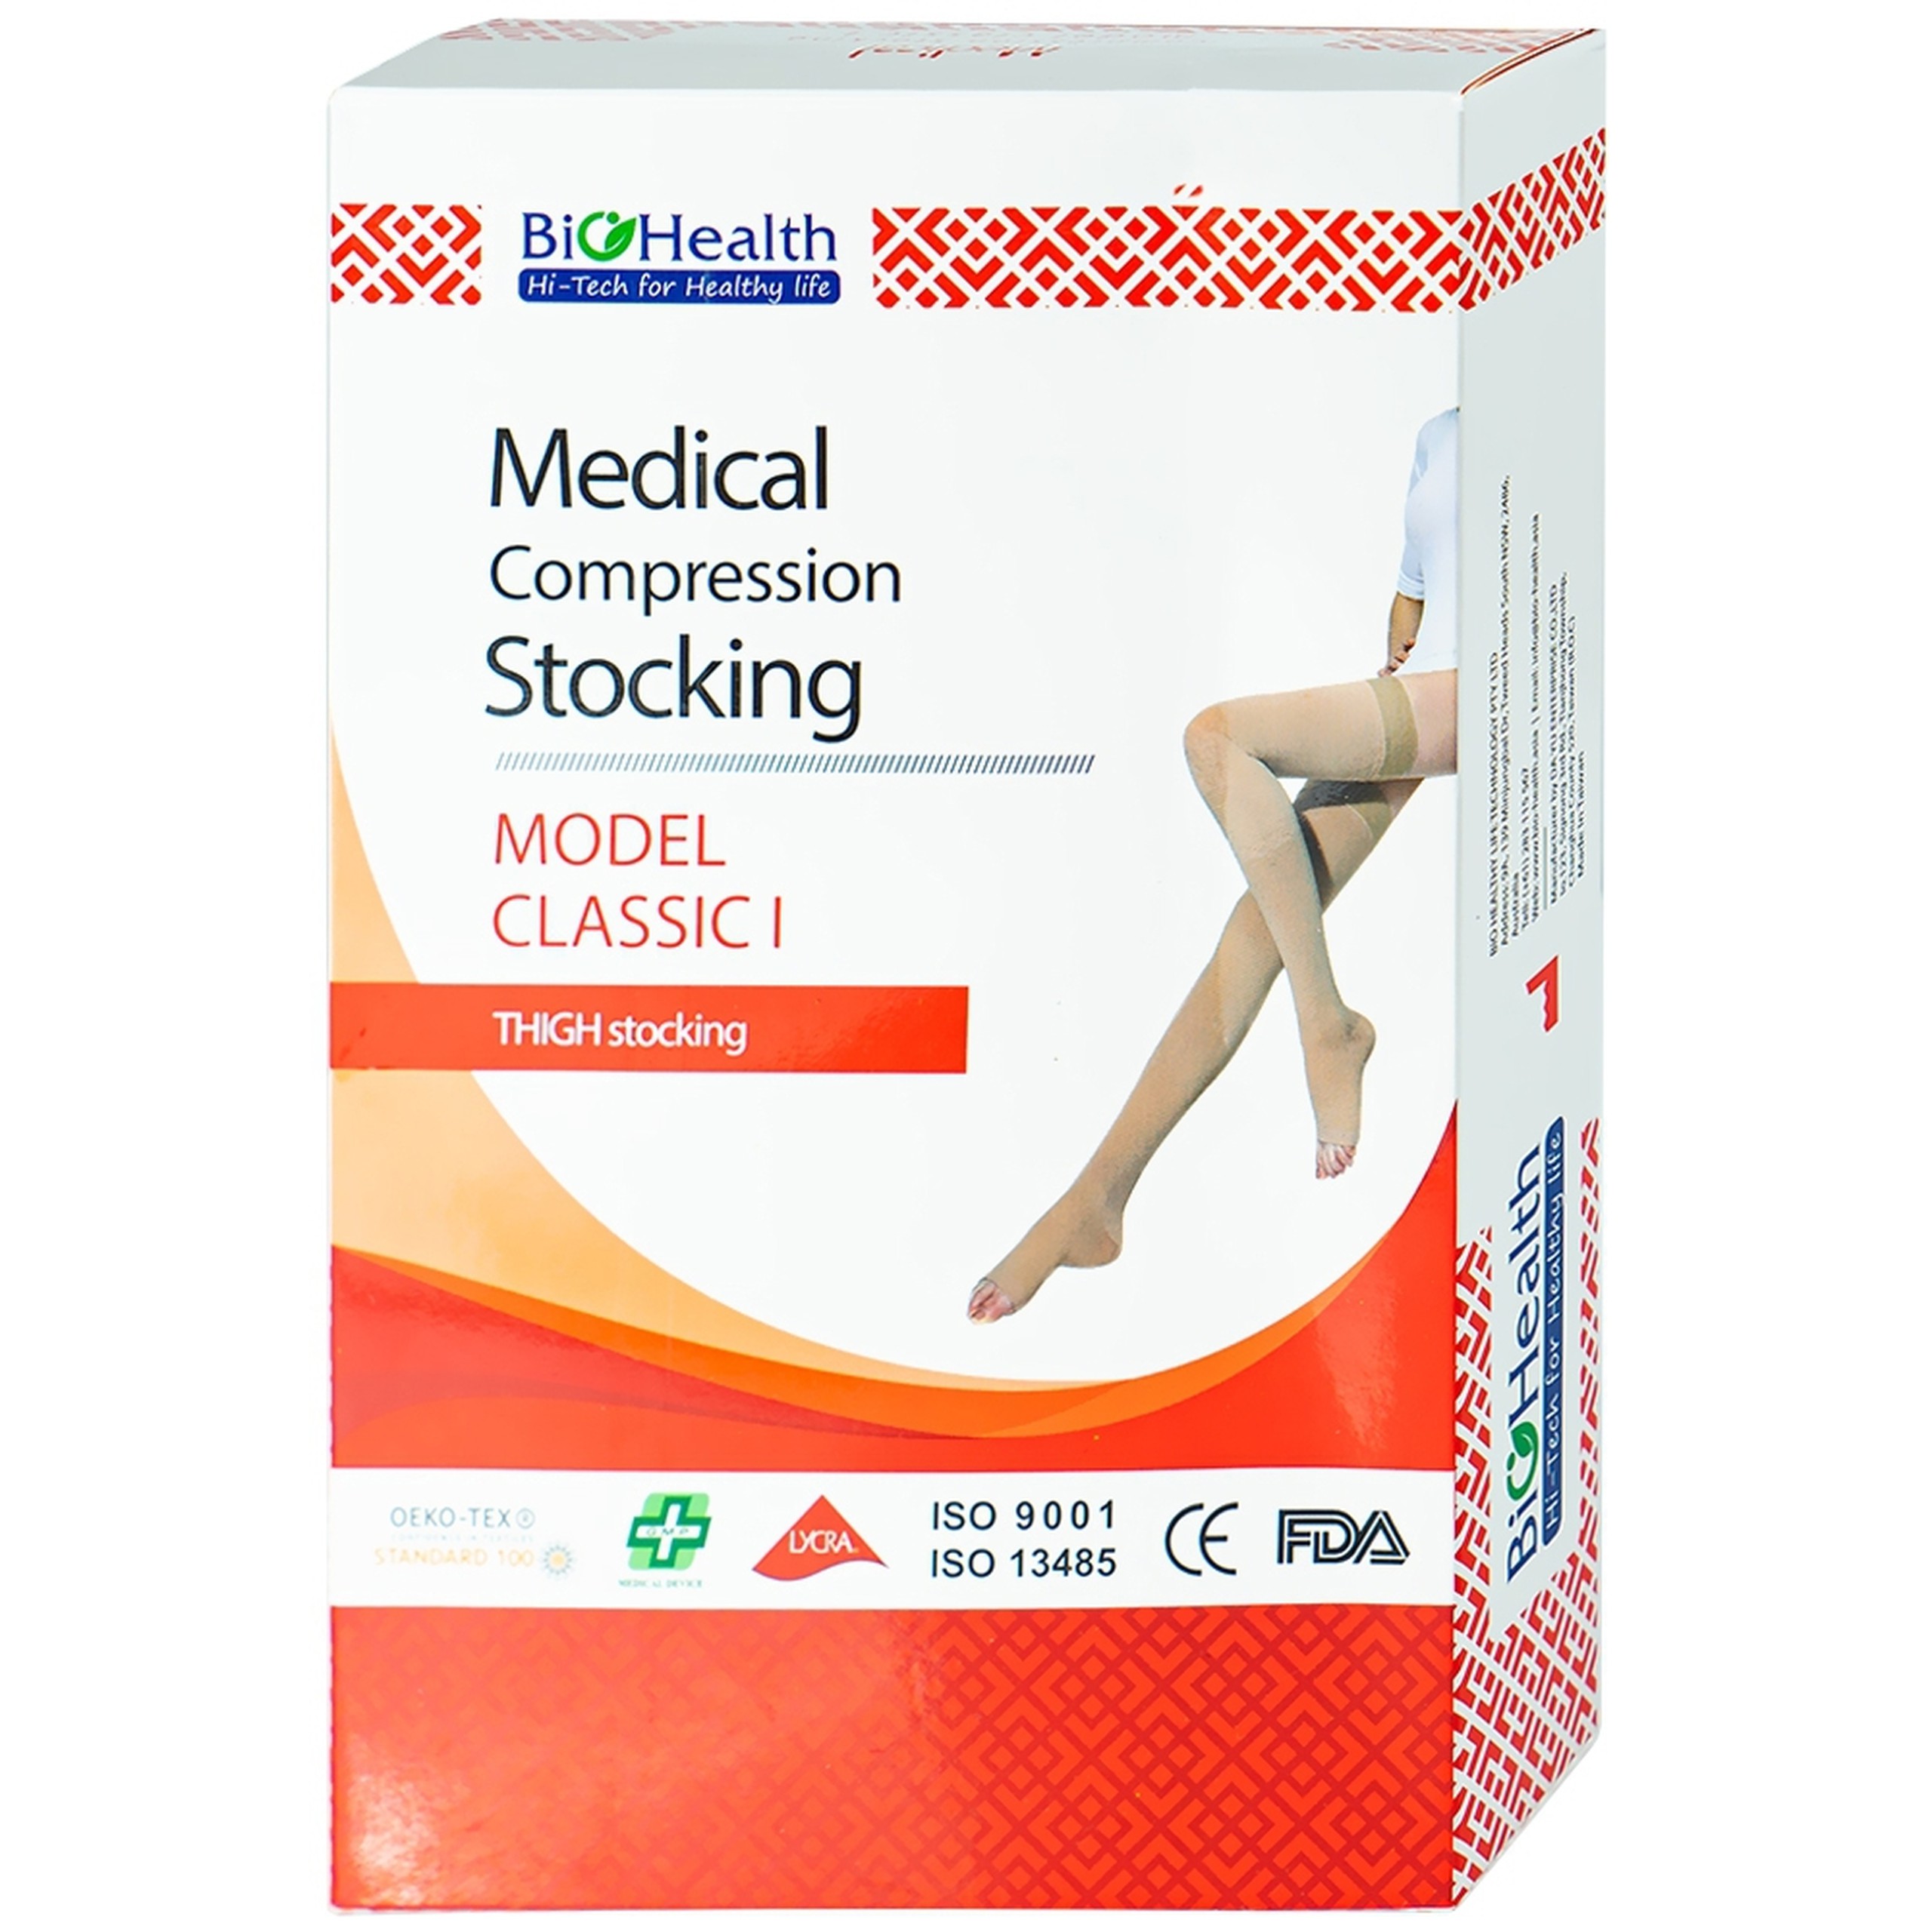 Vớ đùi y khoa Medical Compression Stocking size S BioHealth chống giãn tĩnh mạch